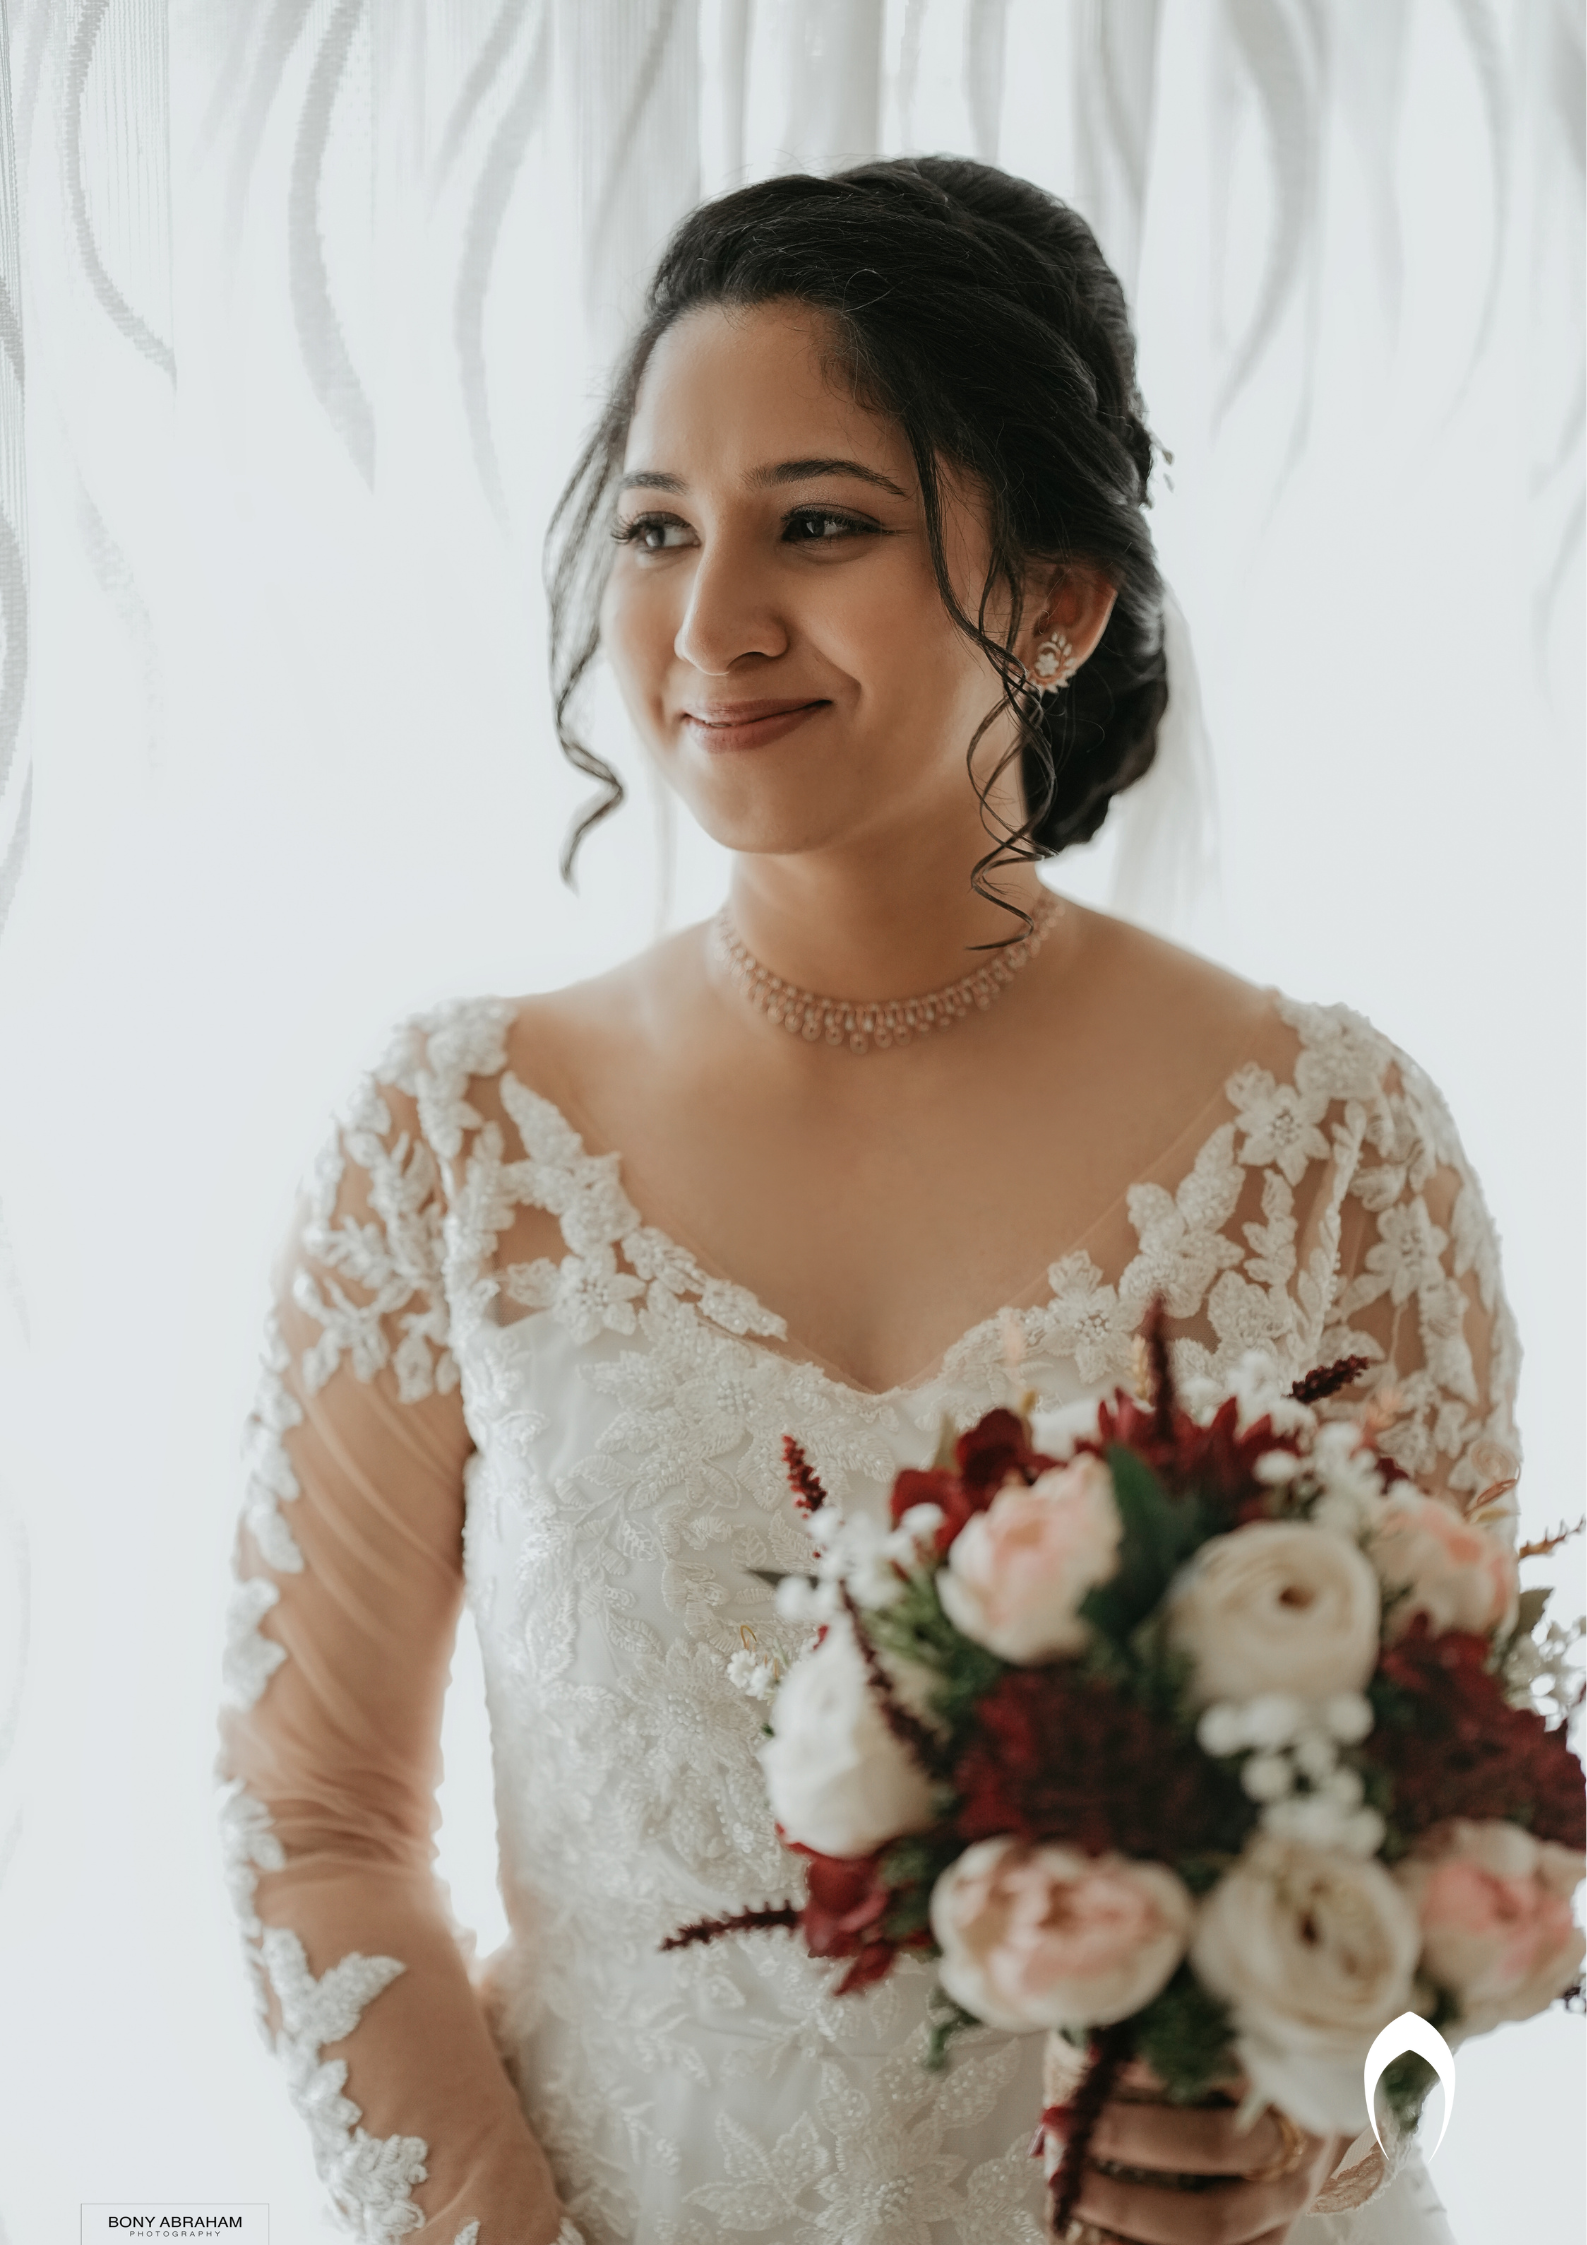 Christian Bride Wedding Gown Ideas | Shaadi Baraati